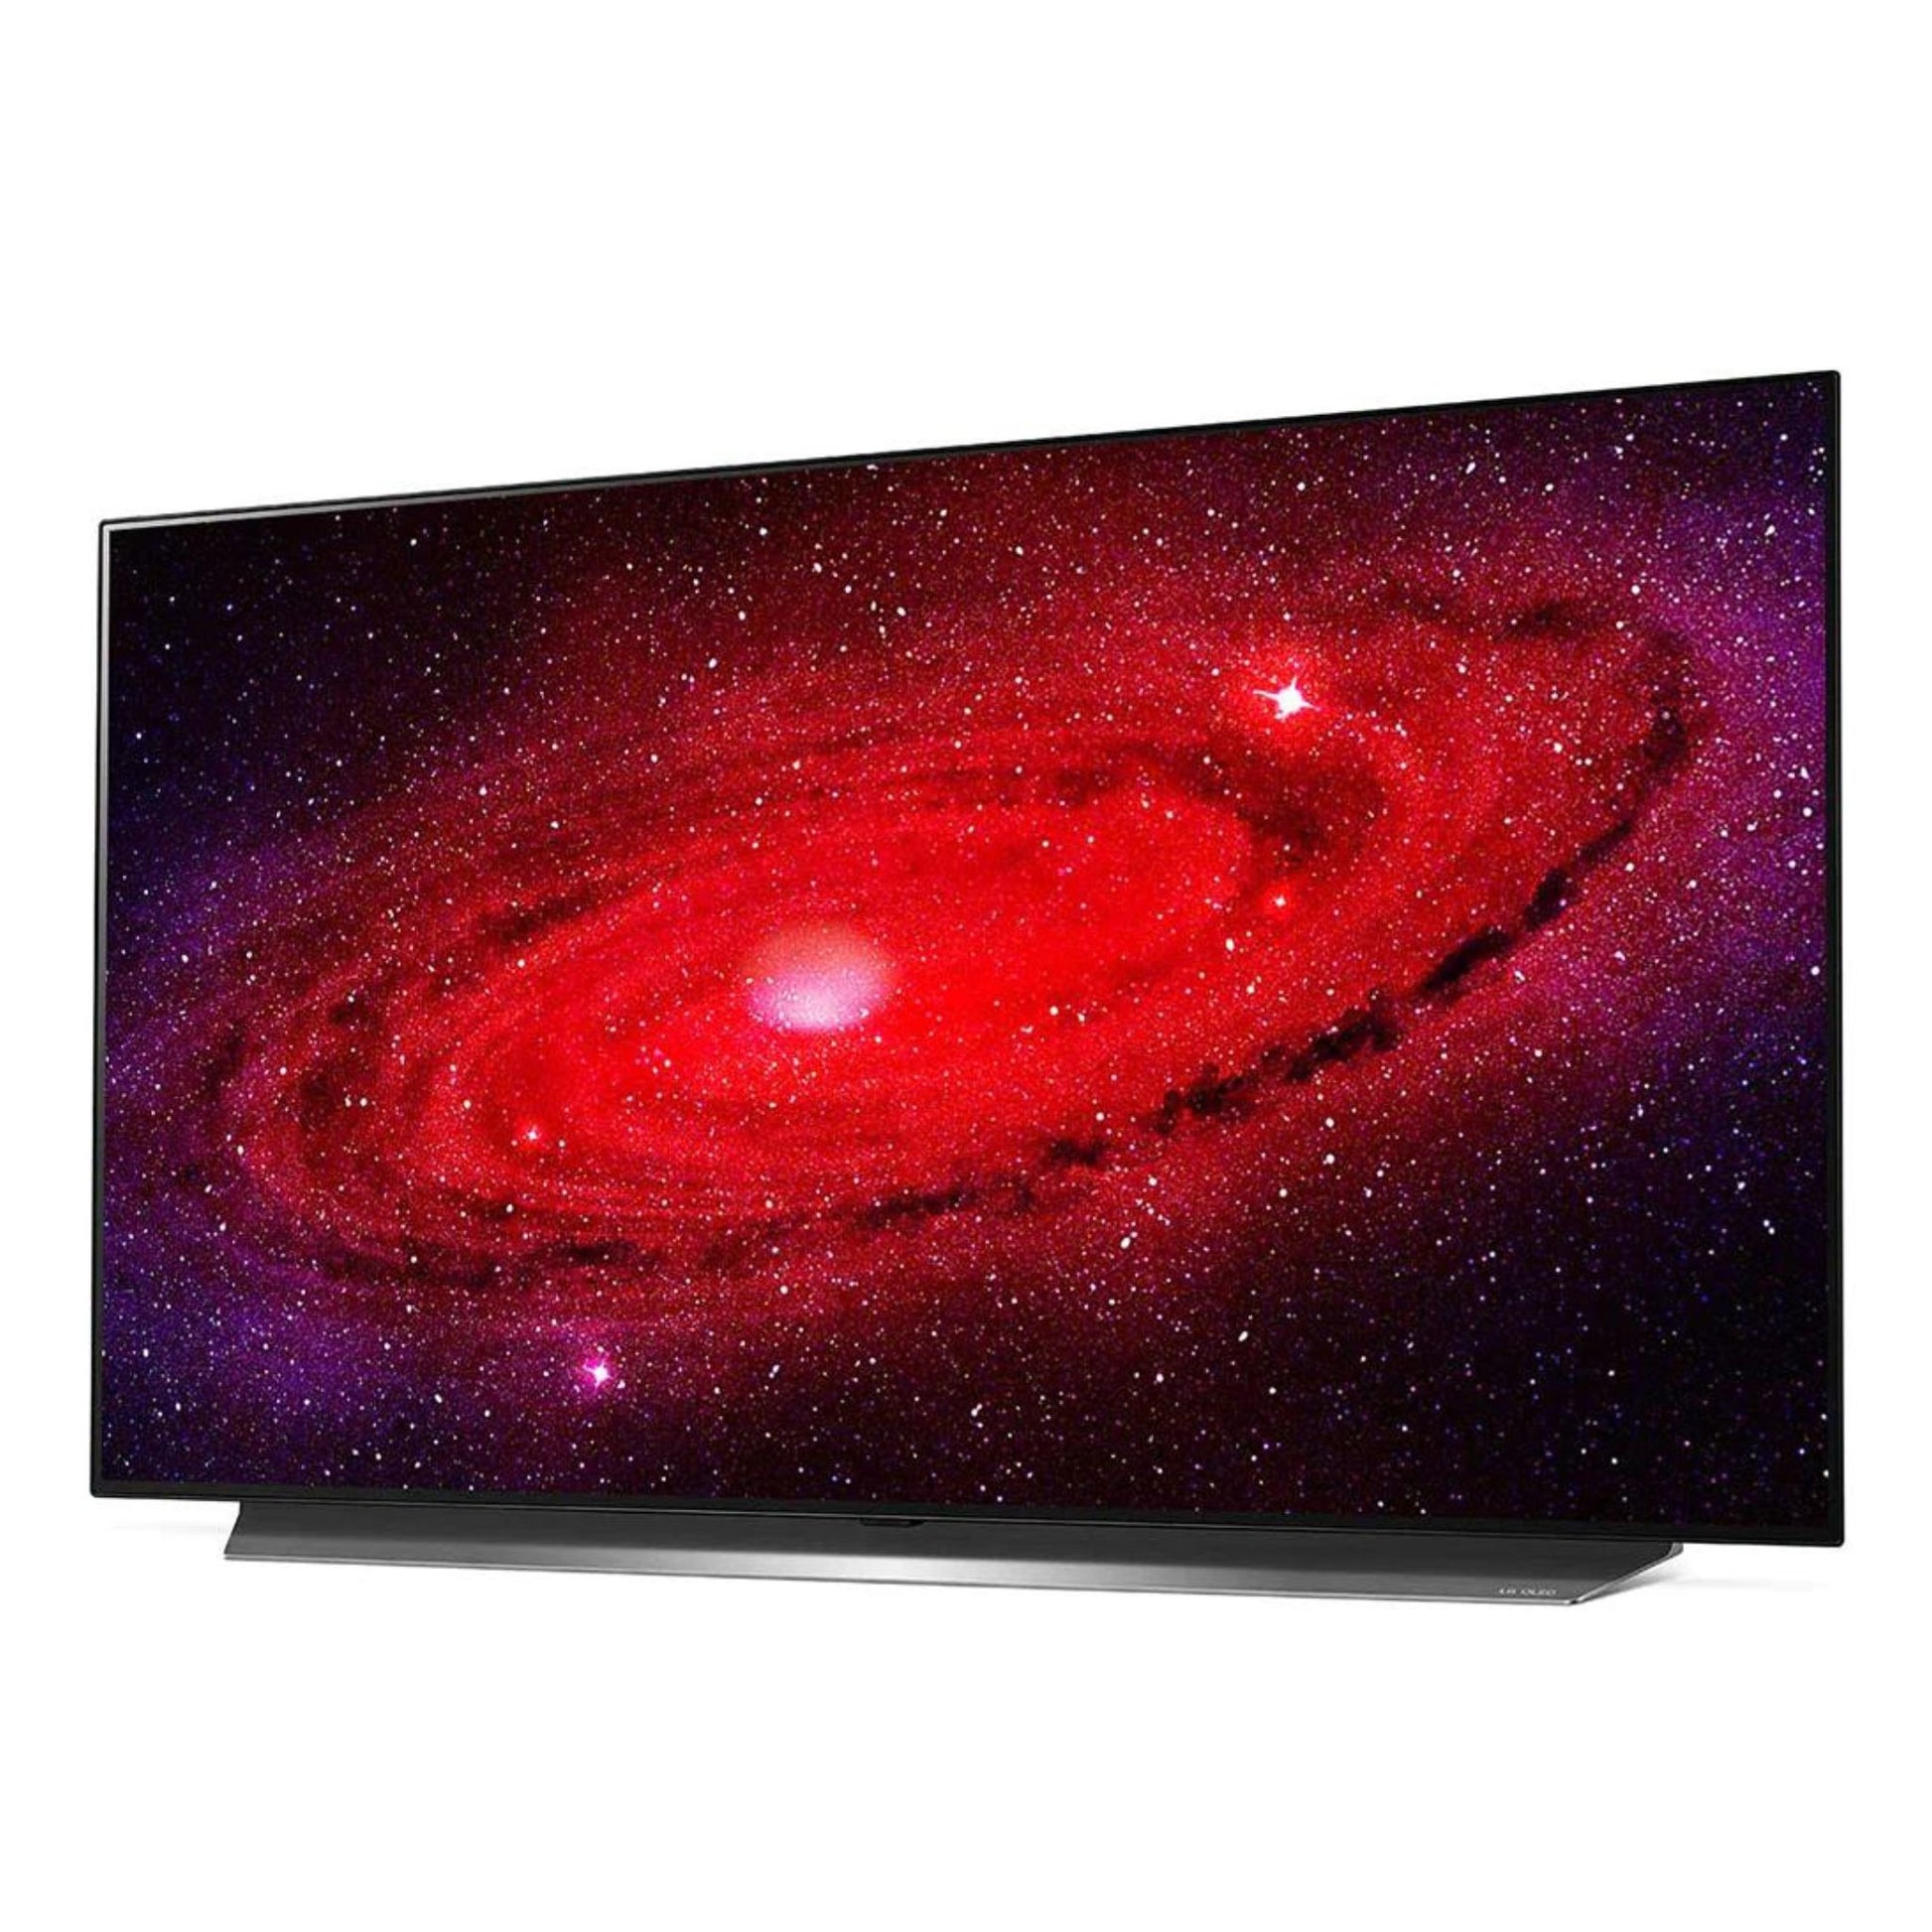 LG 48 inch OLED Smart TV, 48CX